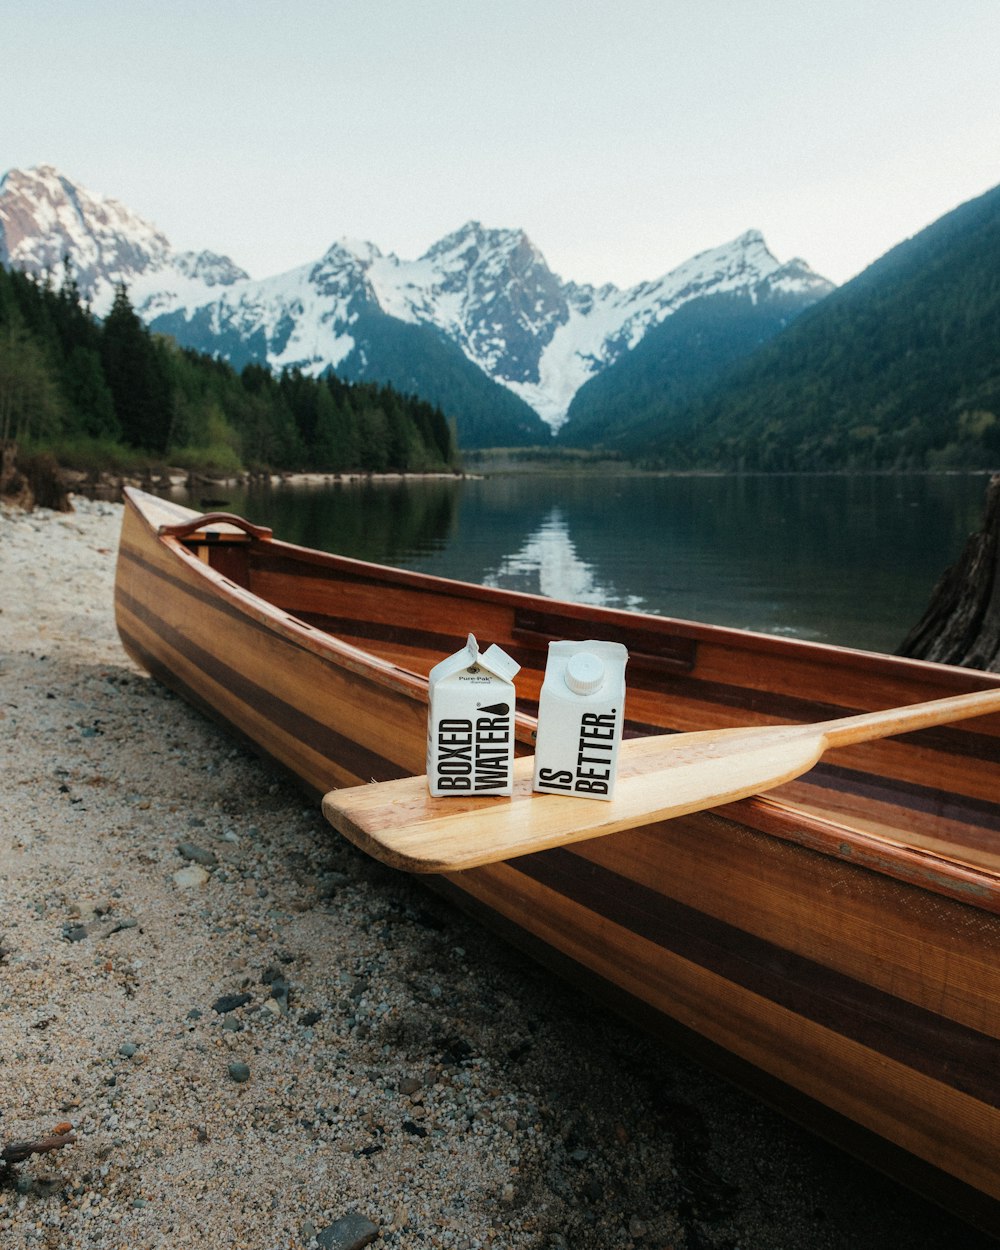 Un bateau en bois sur un lac avec des montagnes en arrière-plan